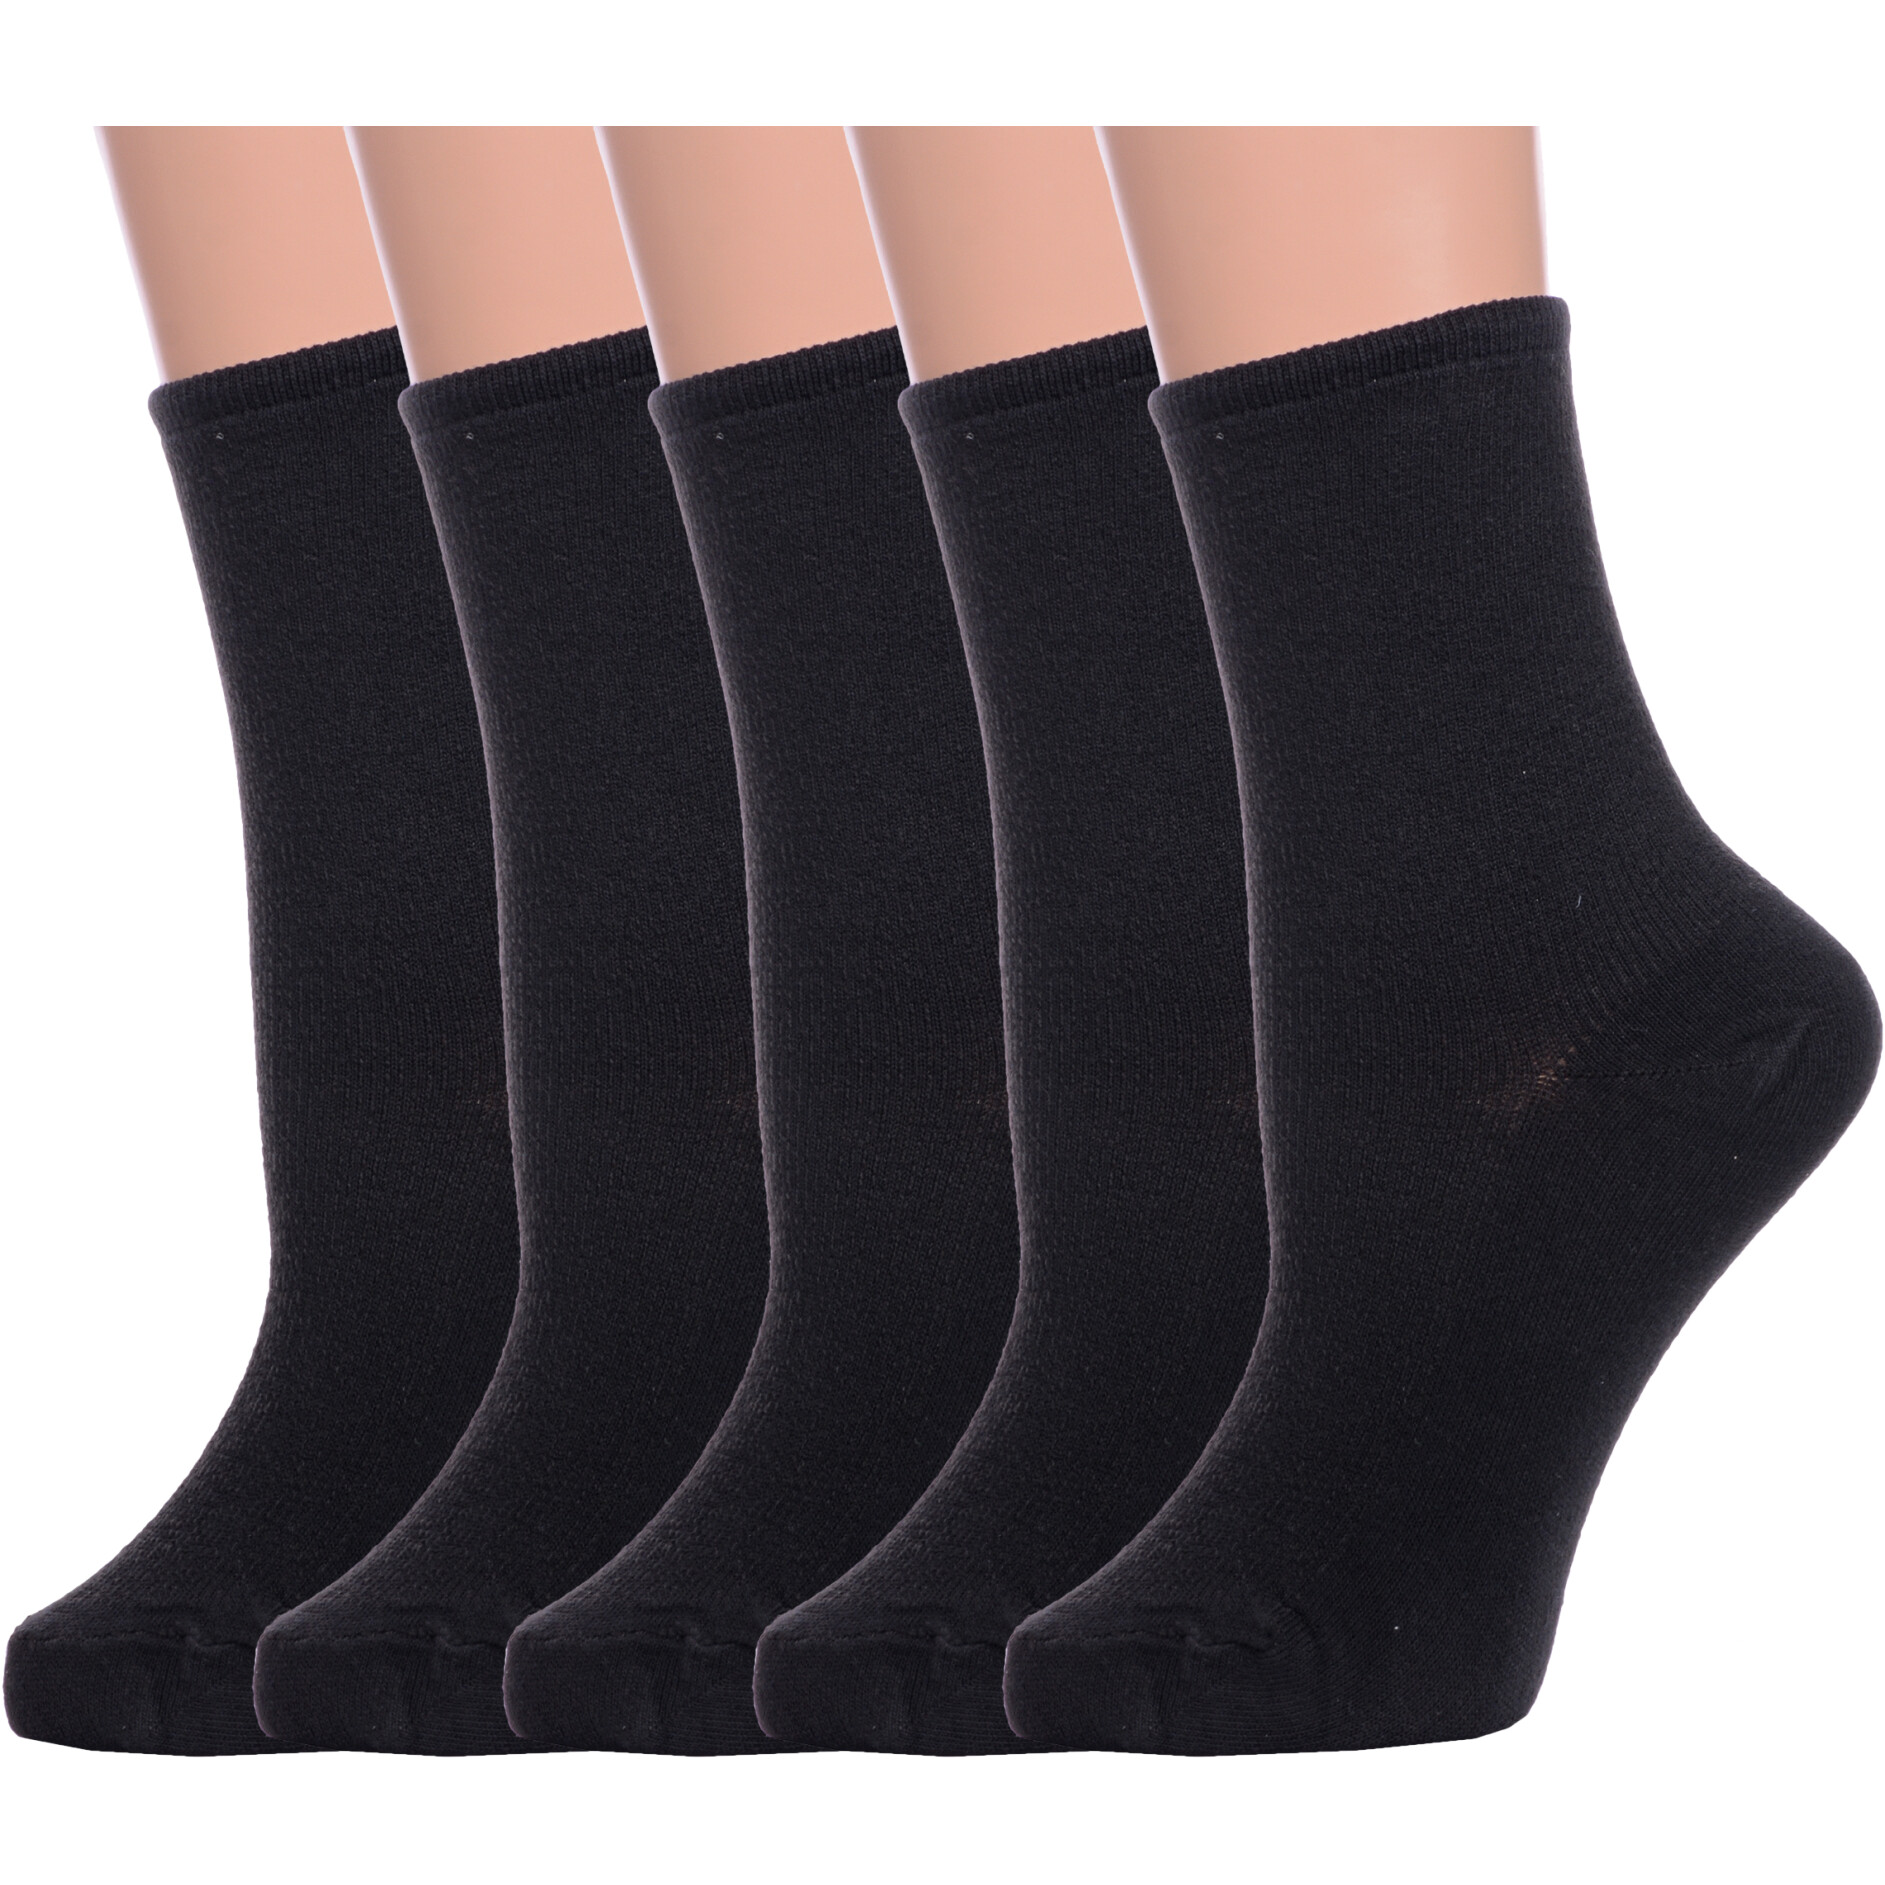 Комплект носков женских Альтаир 5-М198 черных 25 5 пар